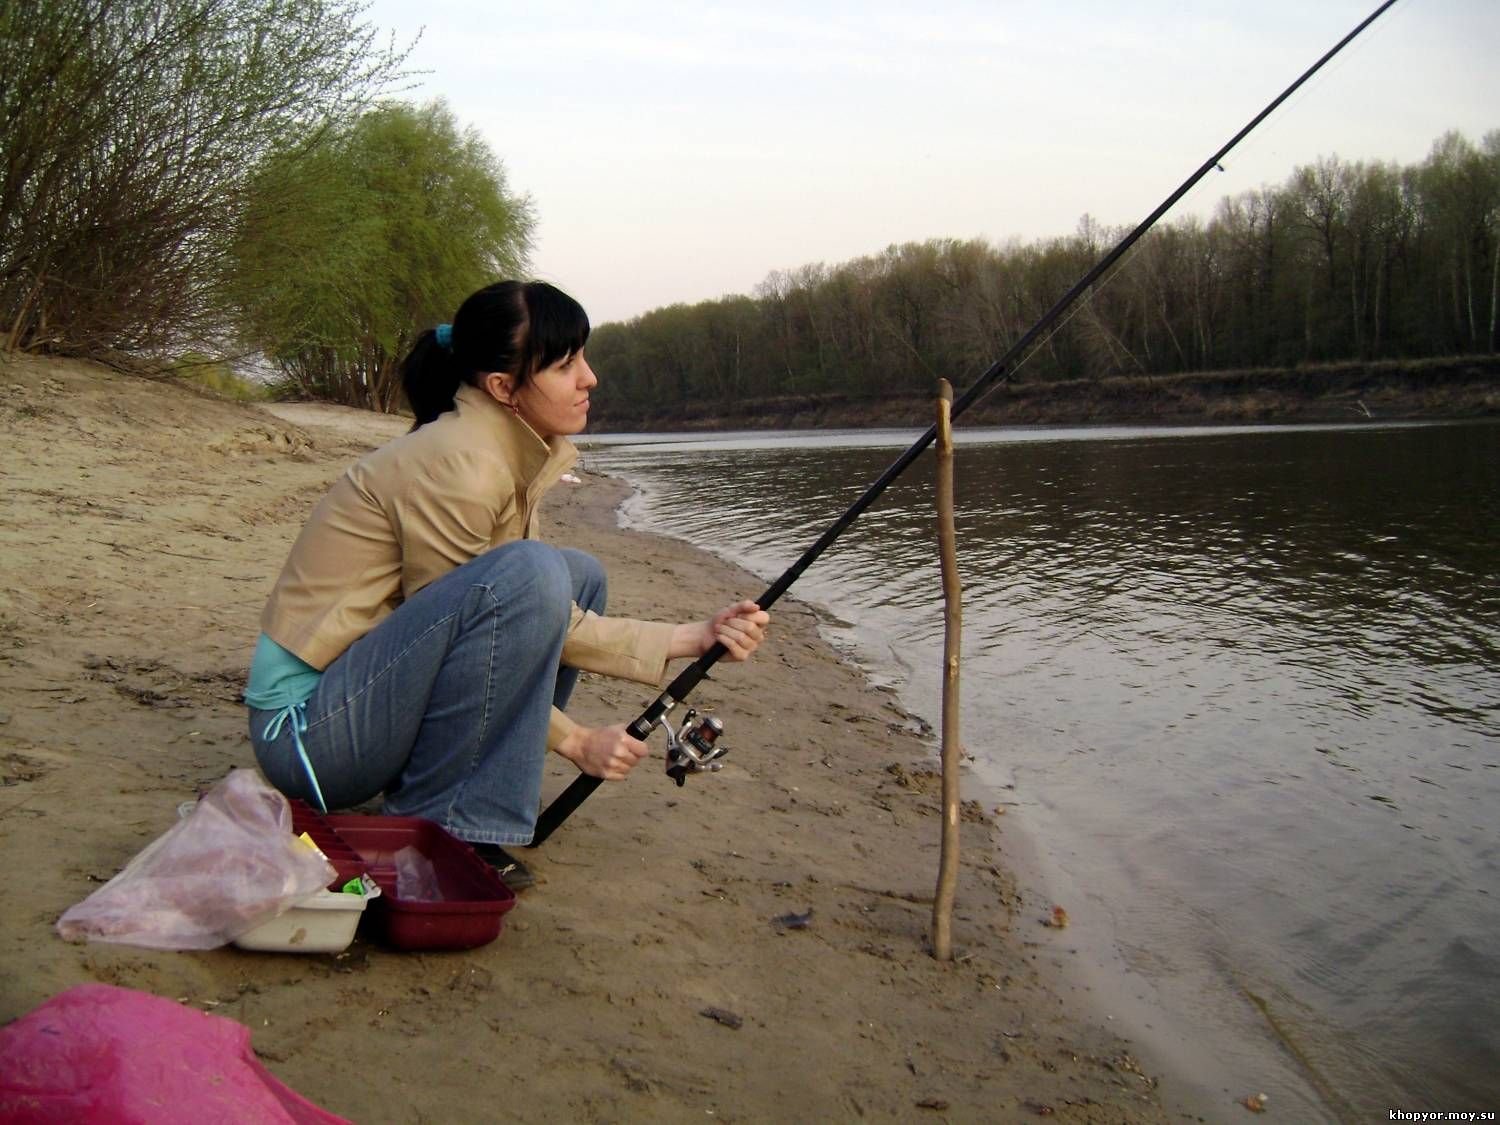 Ютуб рыбалка видео новинки. Девушка с удочкой. Женщина рыбачит. Рыбалка. Прикольные удочки.